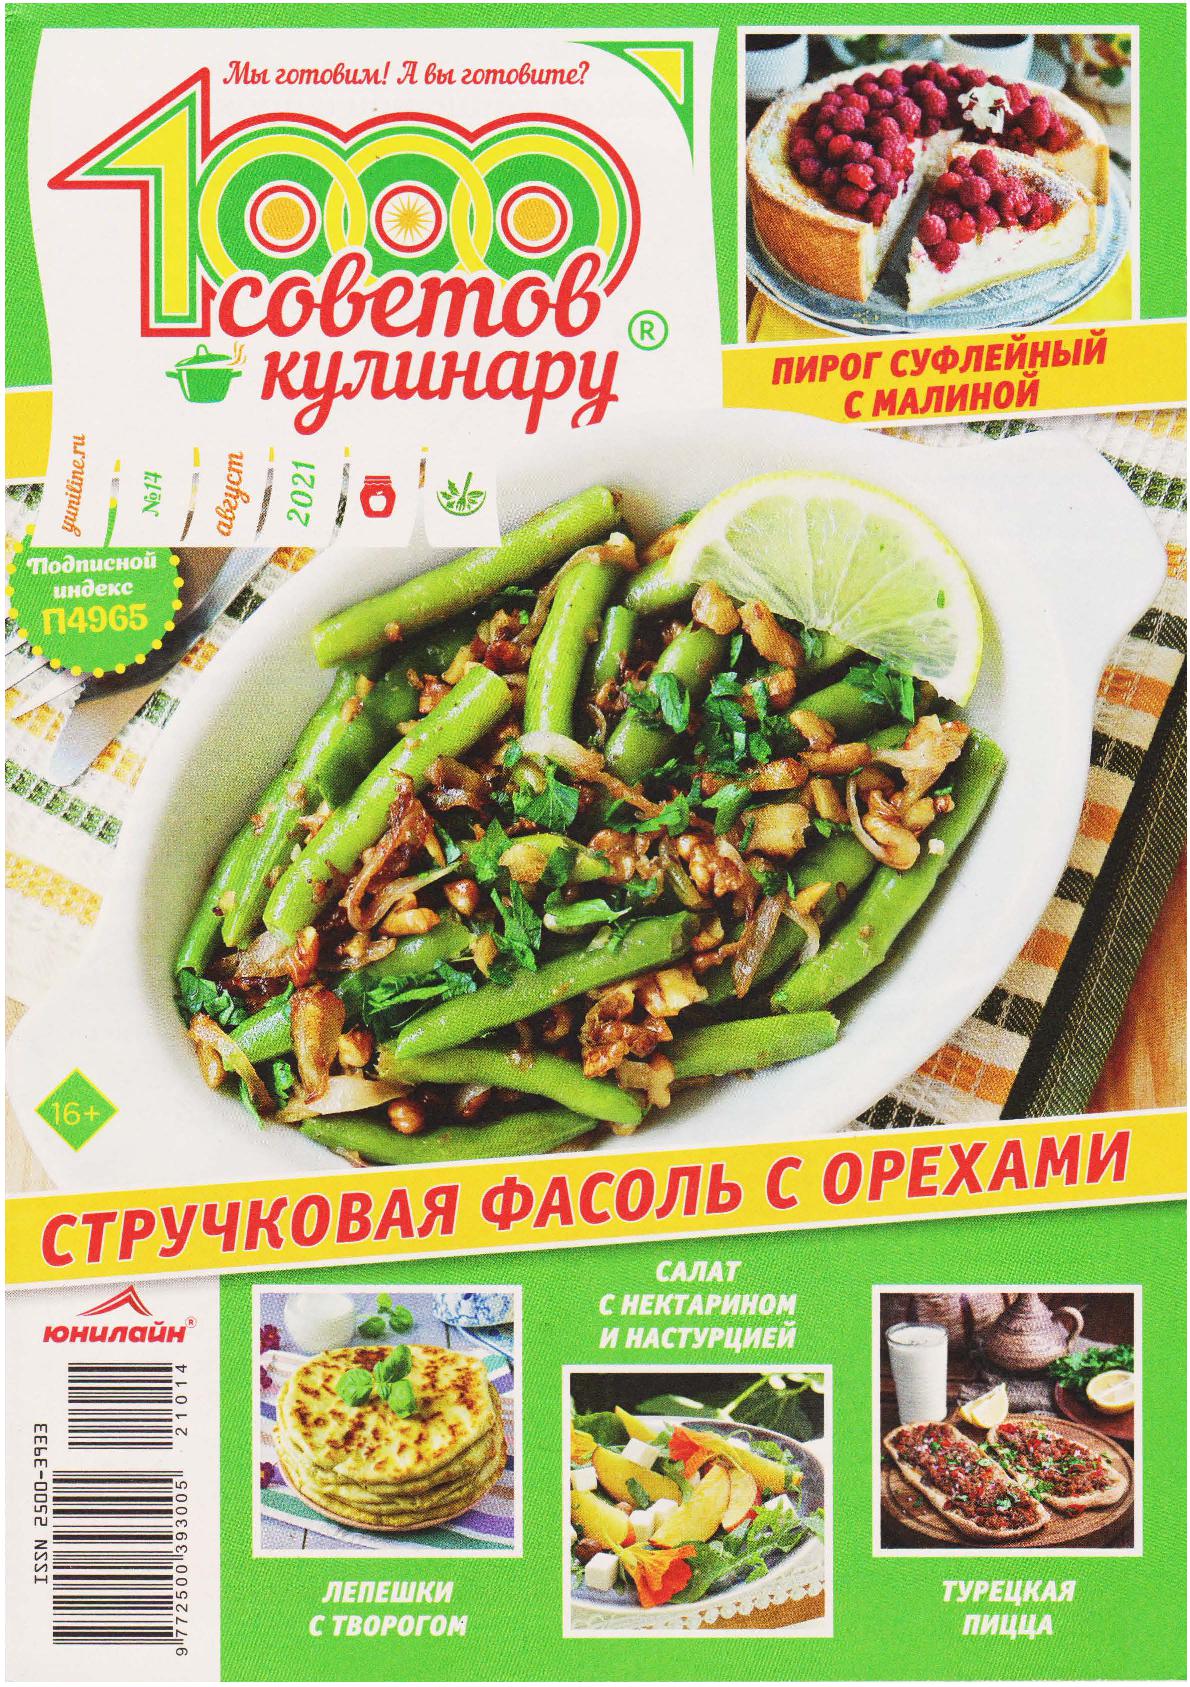 1000 Советов кулинару